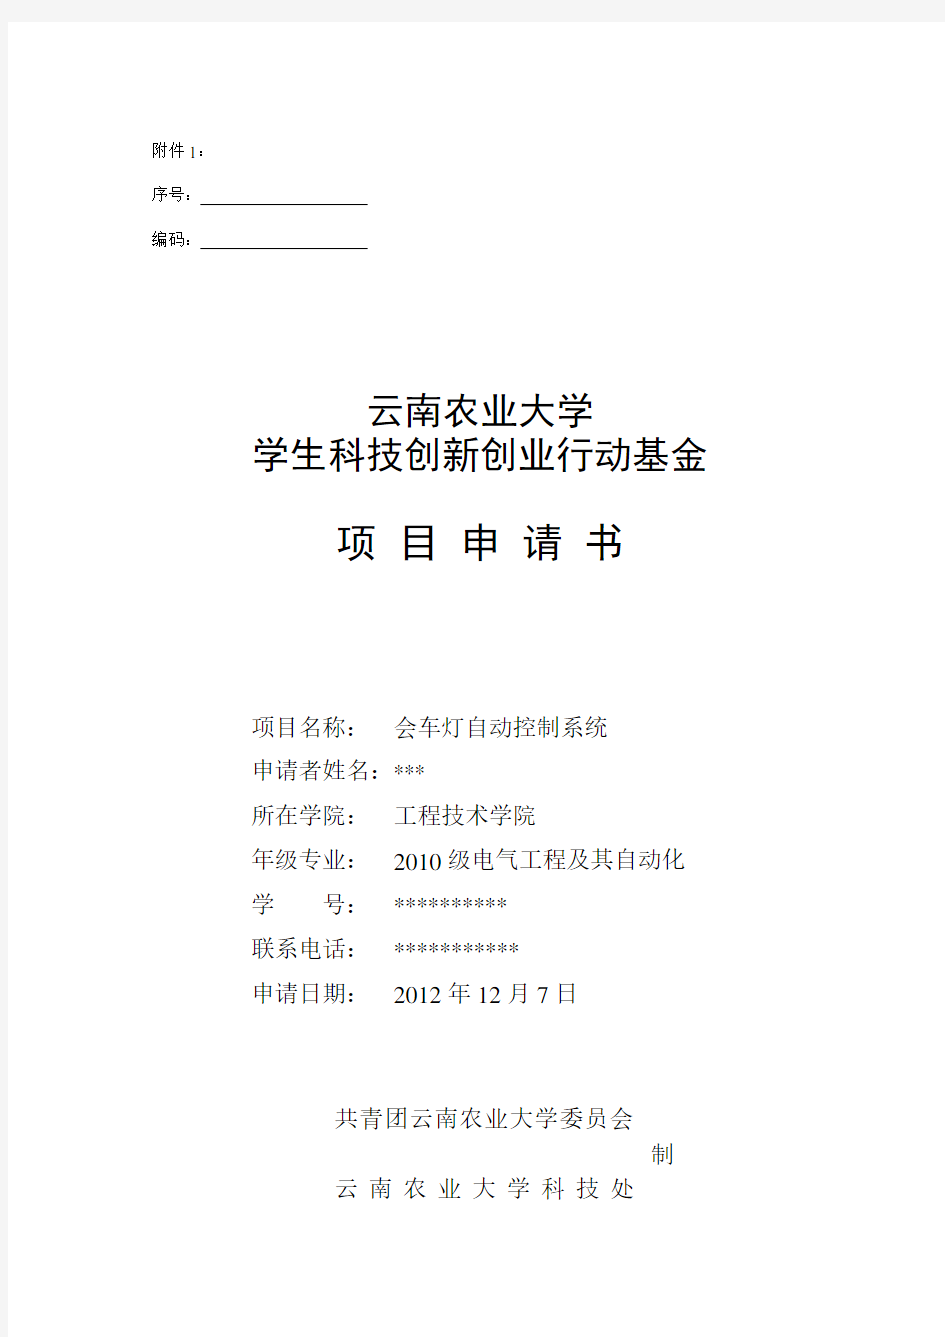 云南农业大学学生科技创新创业行动基金项目申请书